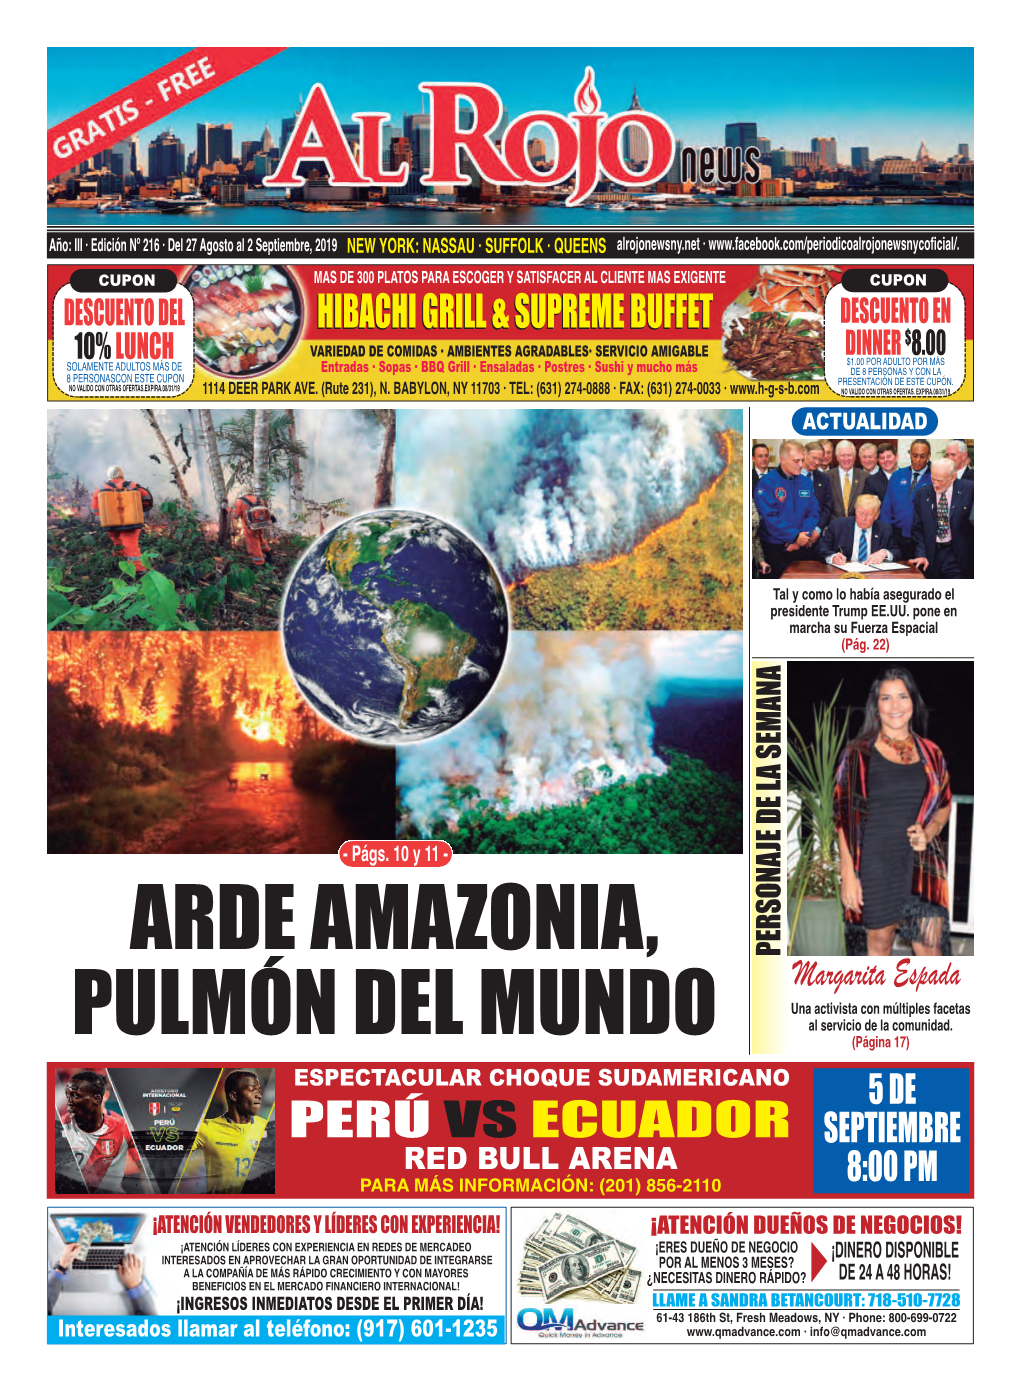 Arde Amazonia, Pulmón Del Mundo